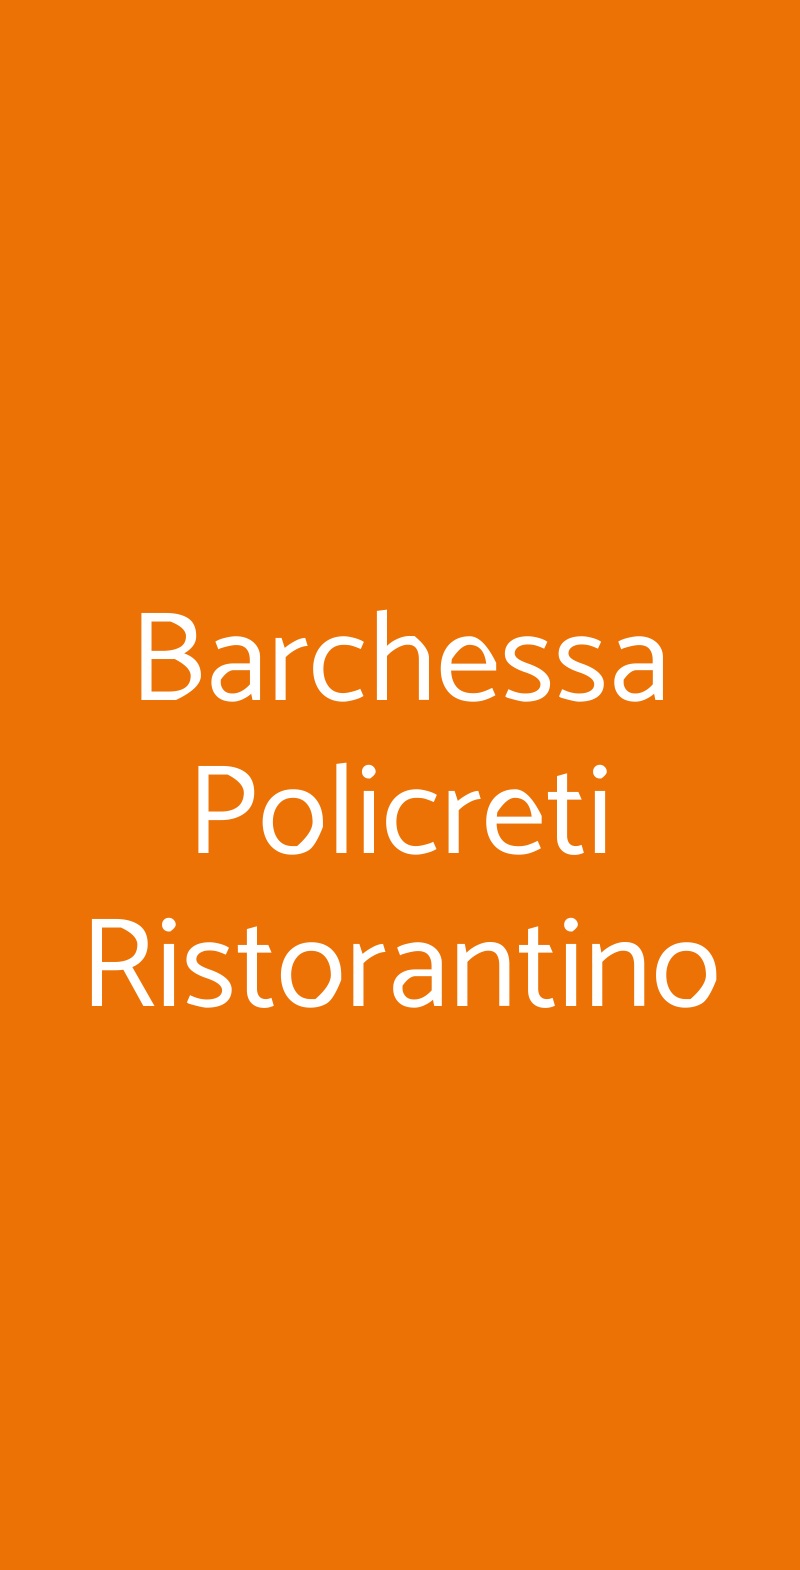 Barchessa Policreti Ristorantino Aviano menù 1 pagina